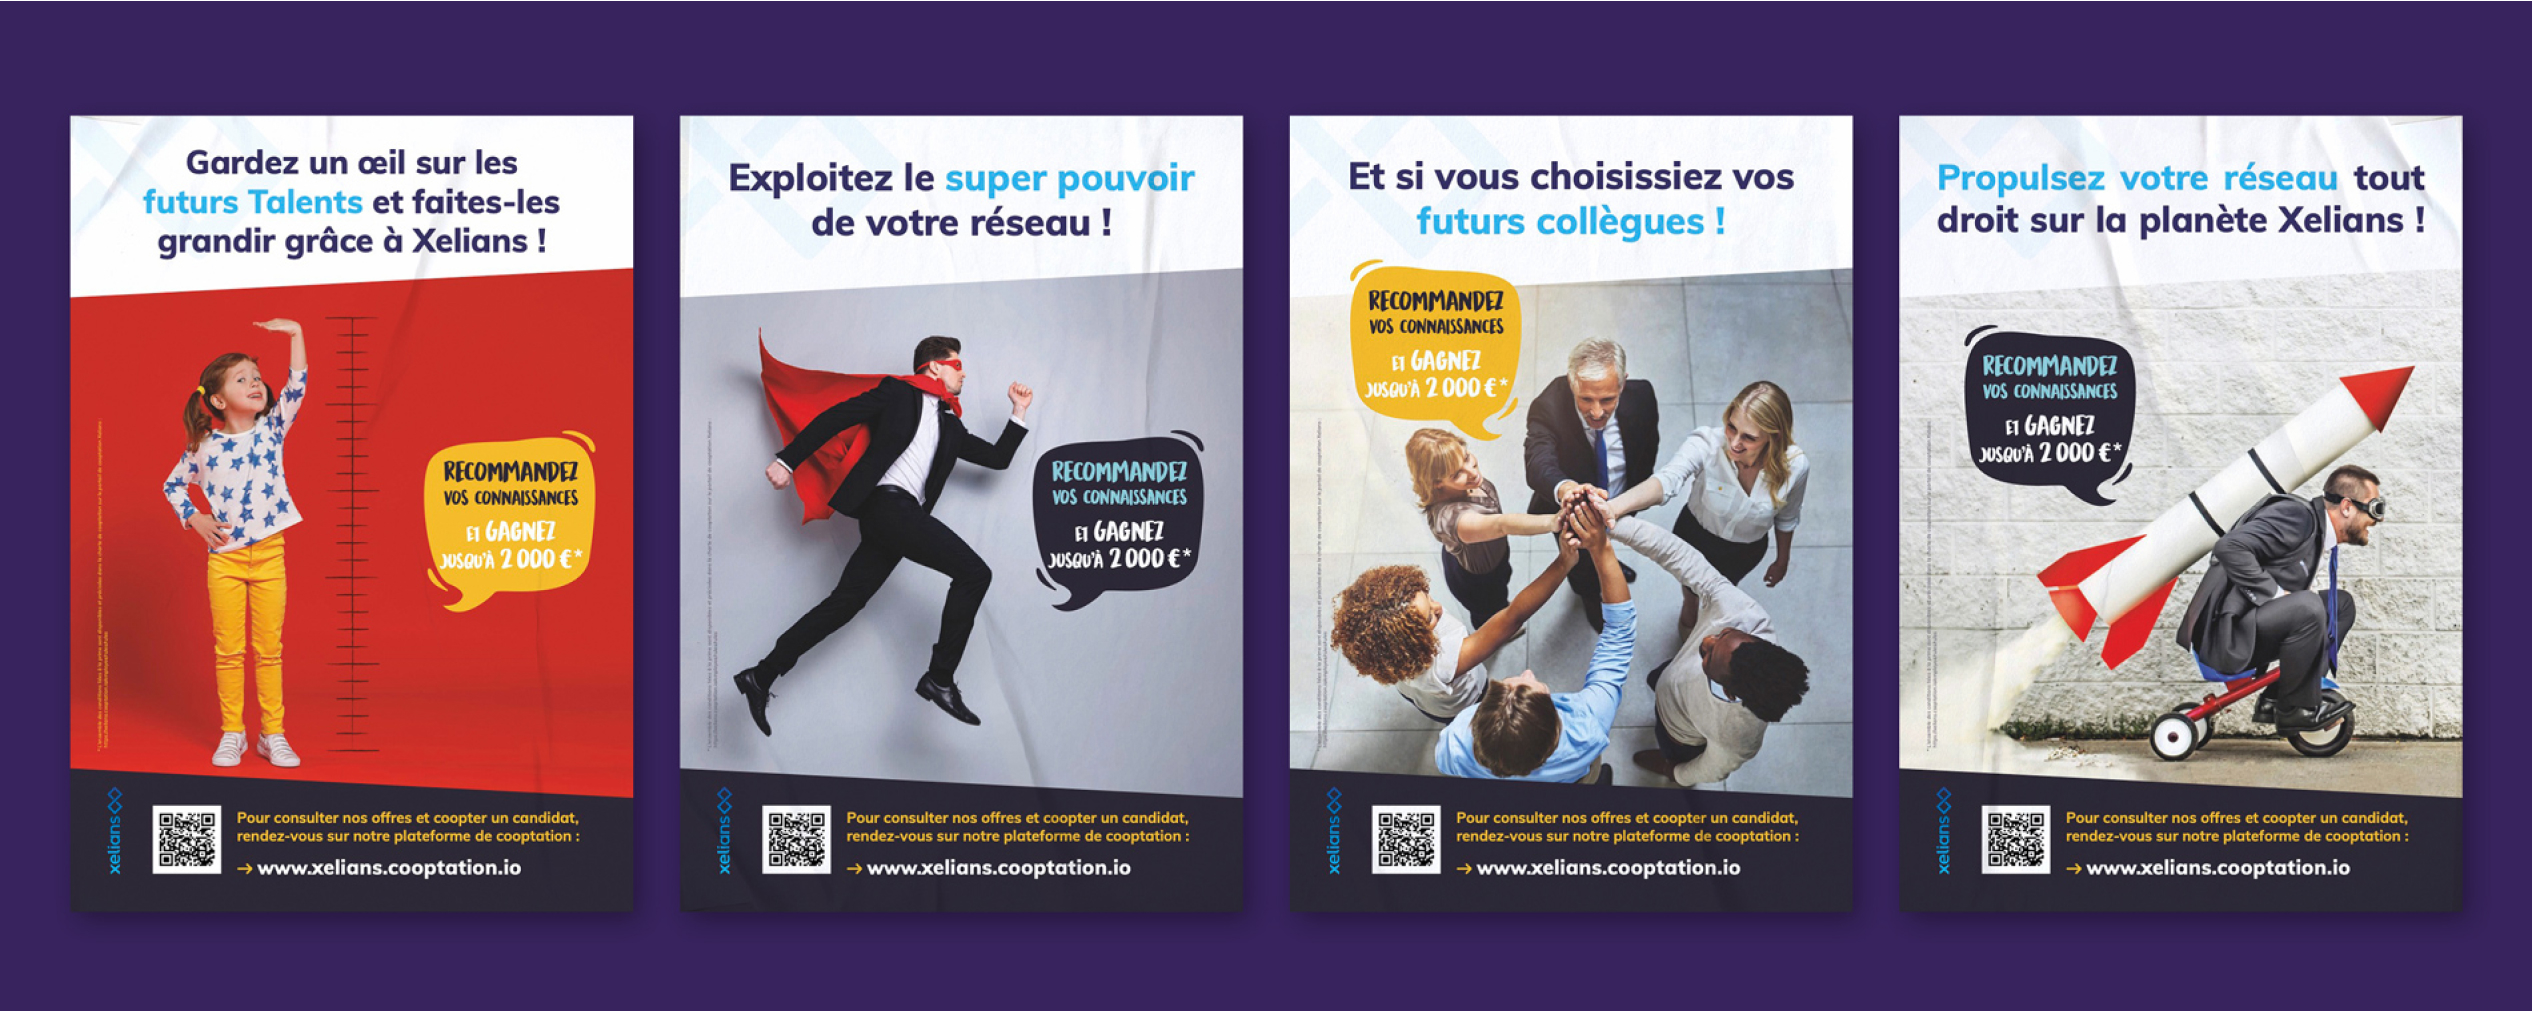 Agence Pixine : aperçu de 4 affiches pour la cooptation réalisées pour Xelians